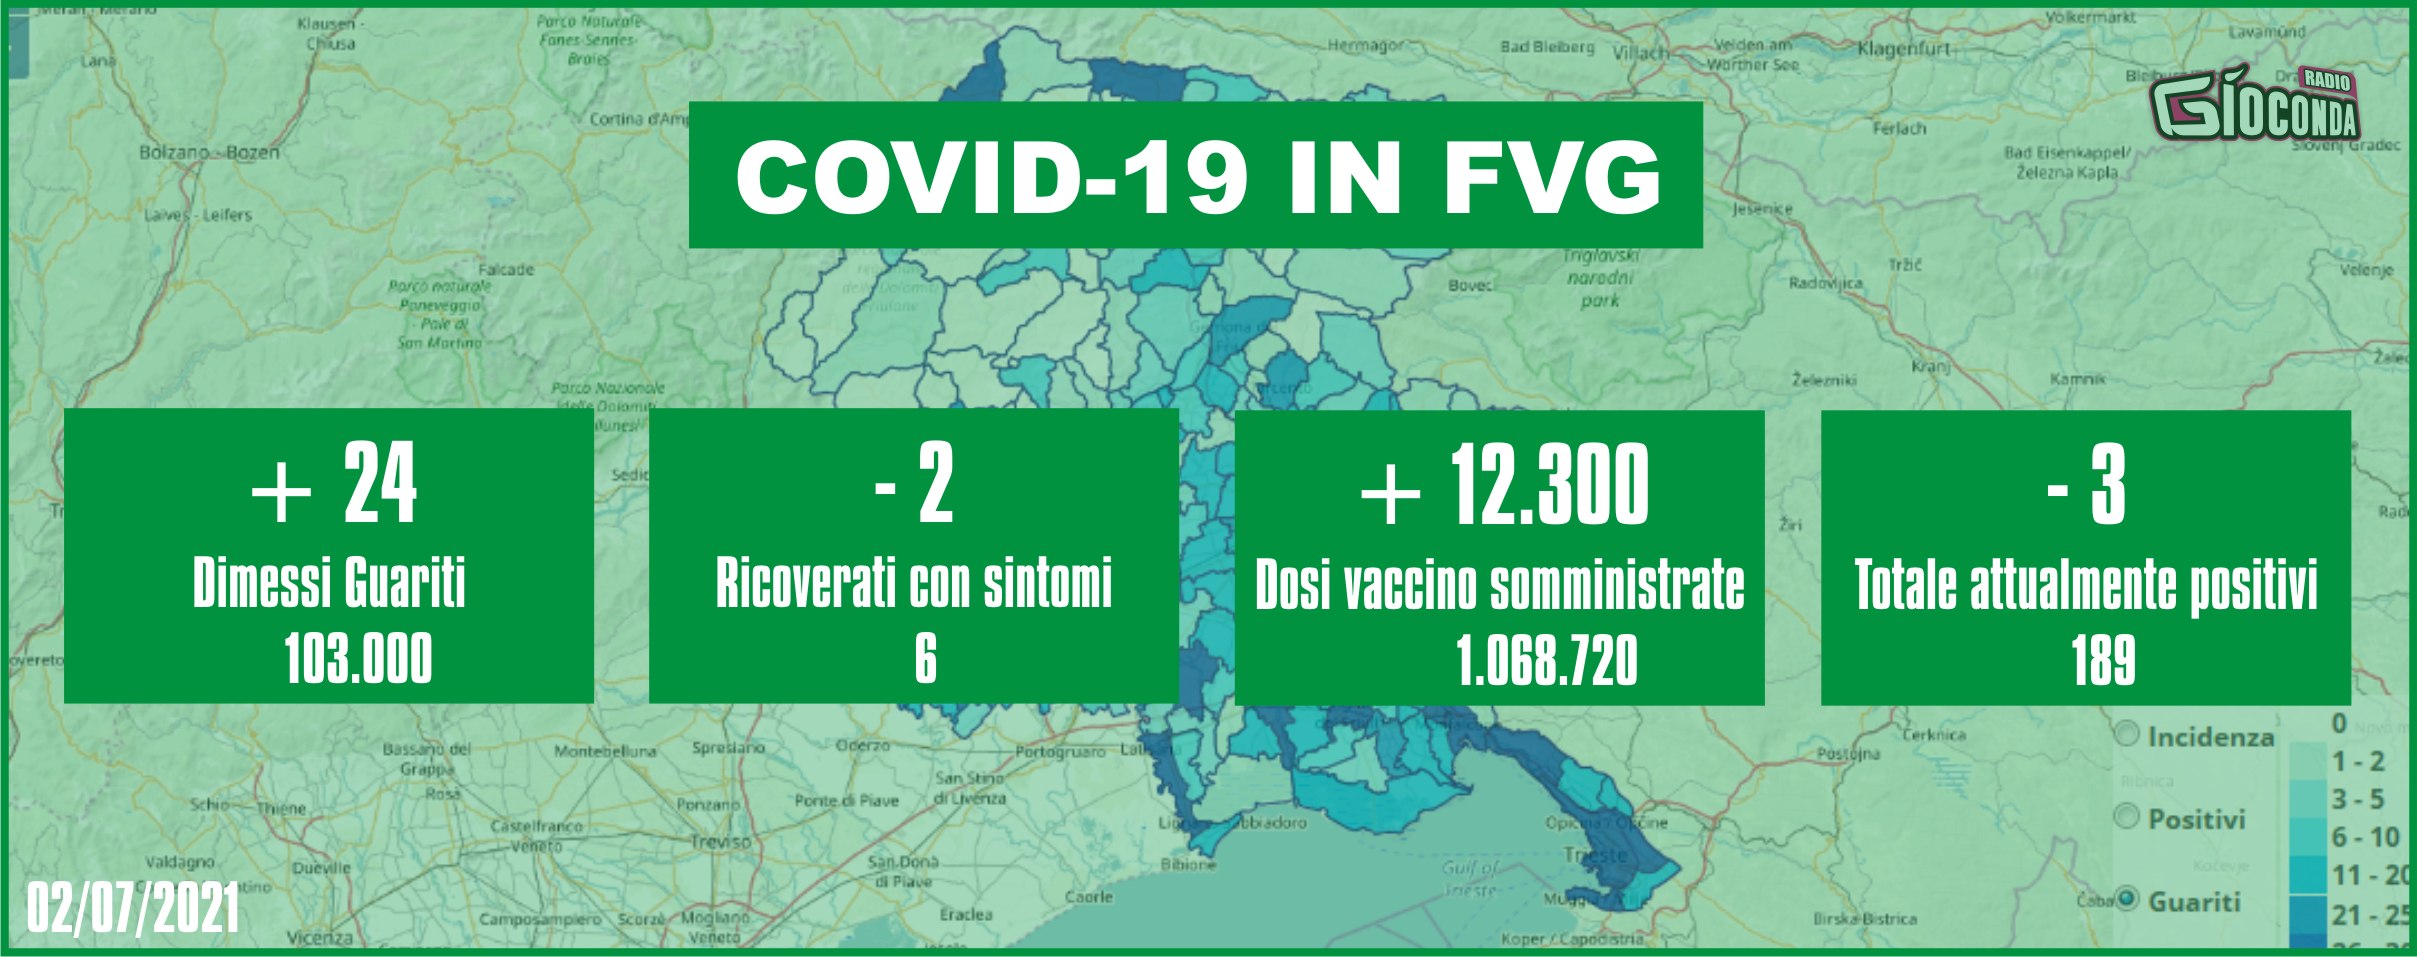 2 luglio 2021 - Aggiornamento casi Covid-19 Dati aggregati quotidiani FRIULI VENEZIA GIULIA